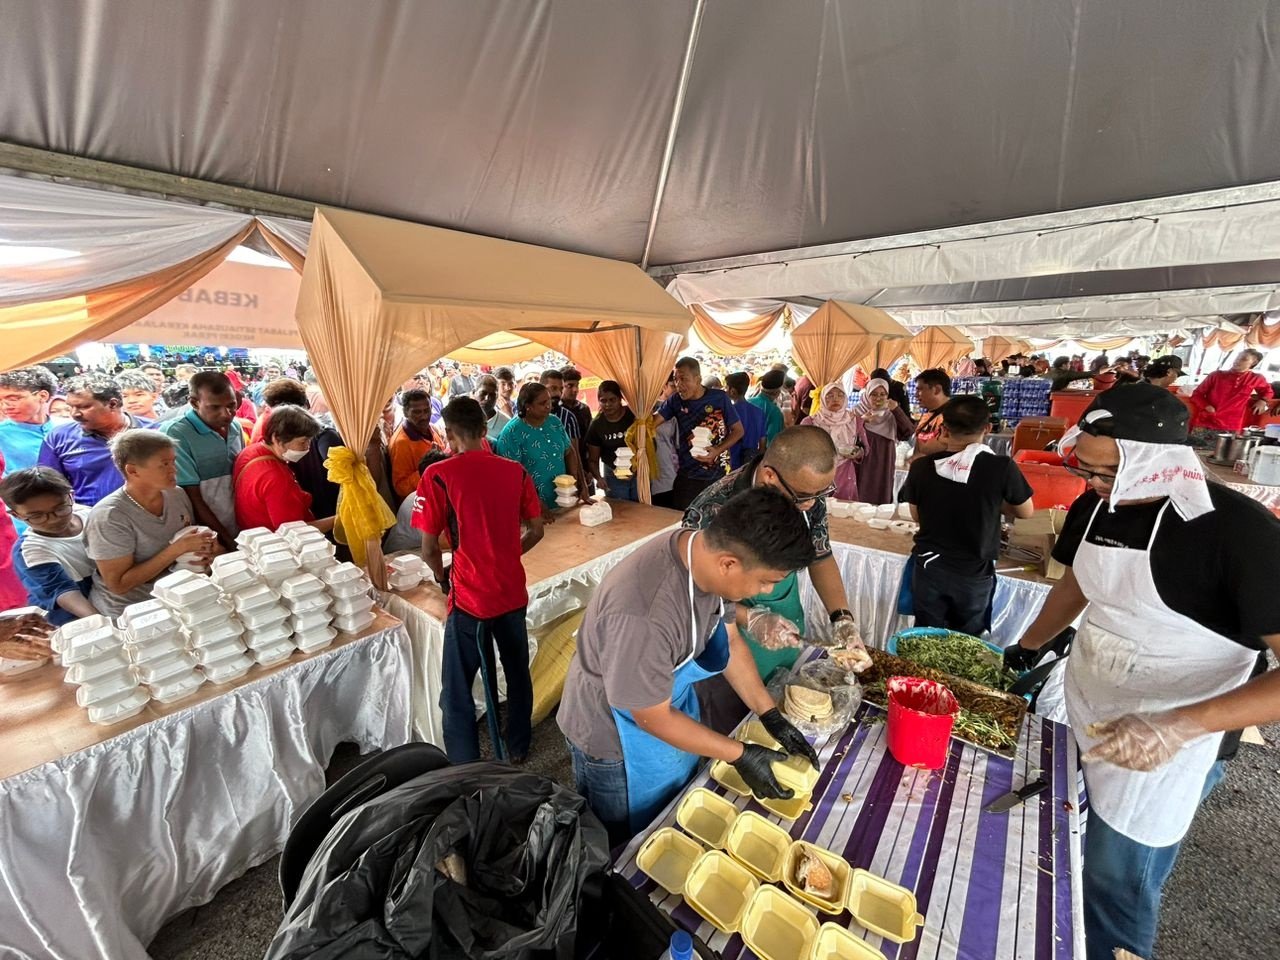 霹雳州政府在怡保英德拉慕丽亚体育馆举行开斋节开放门户，各食摊忙碌为民众准备食物。